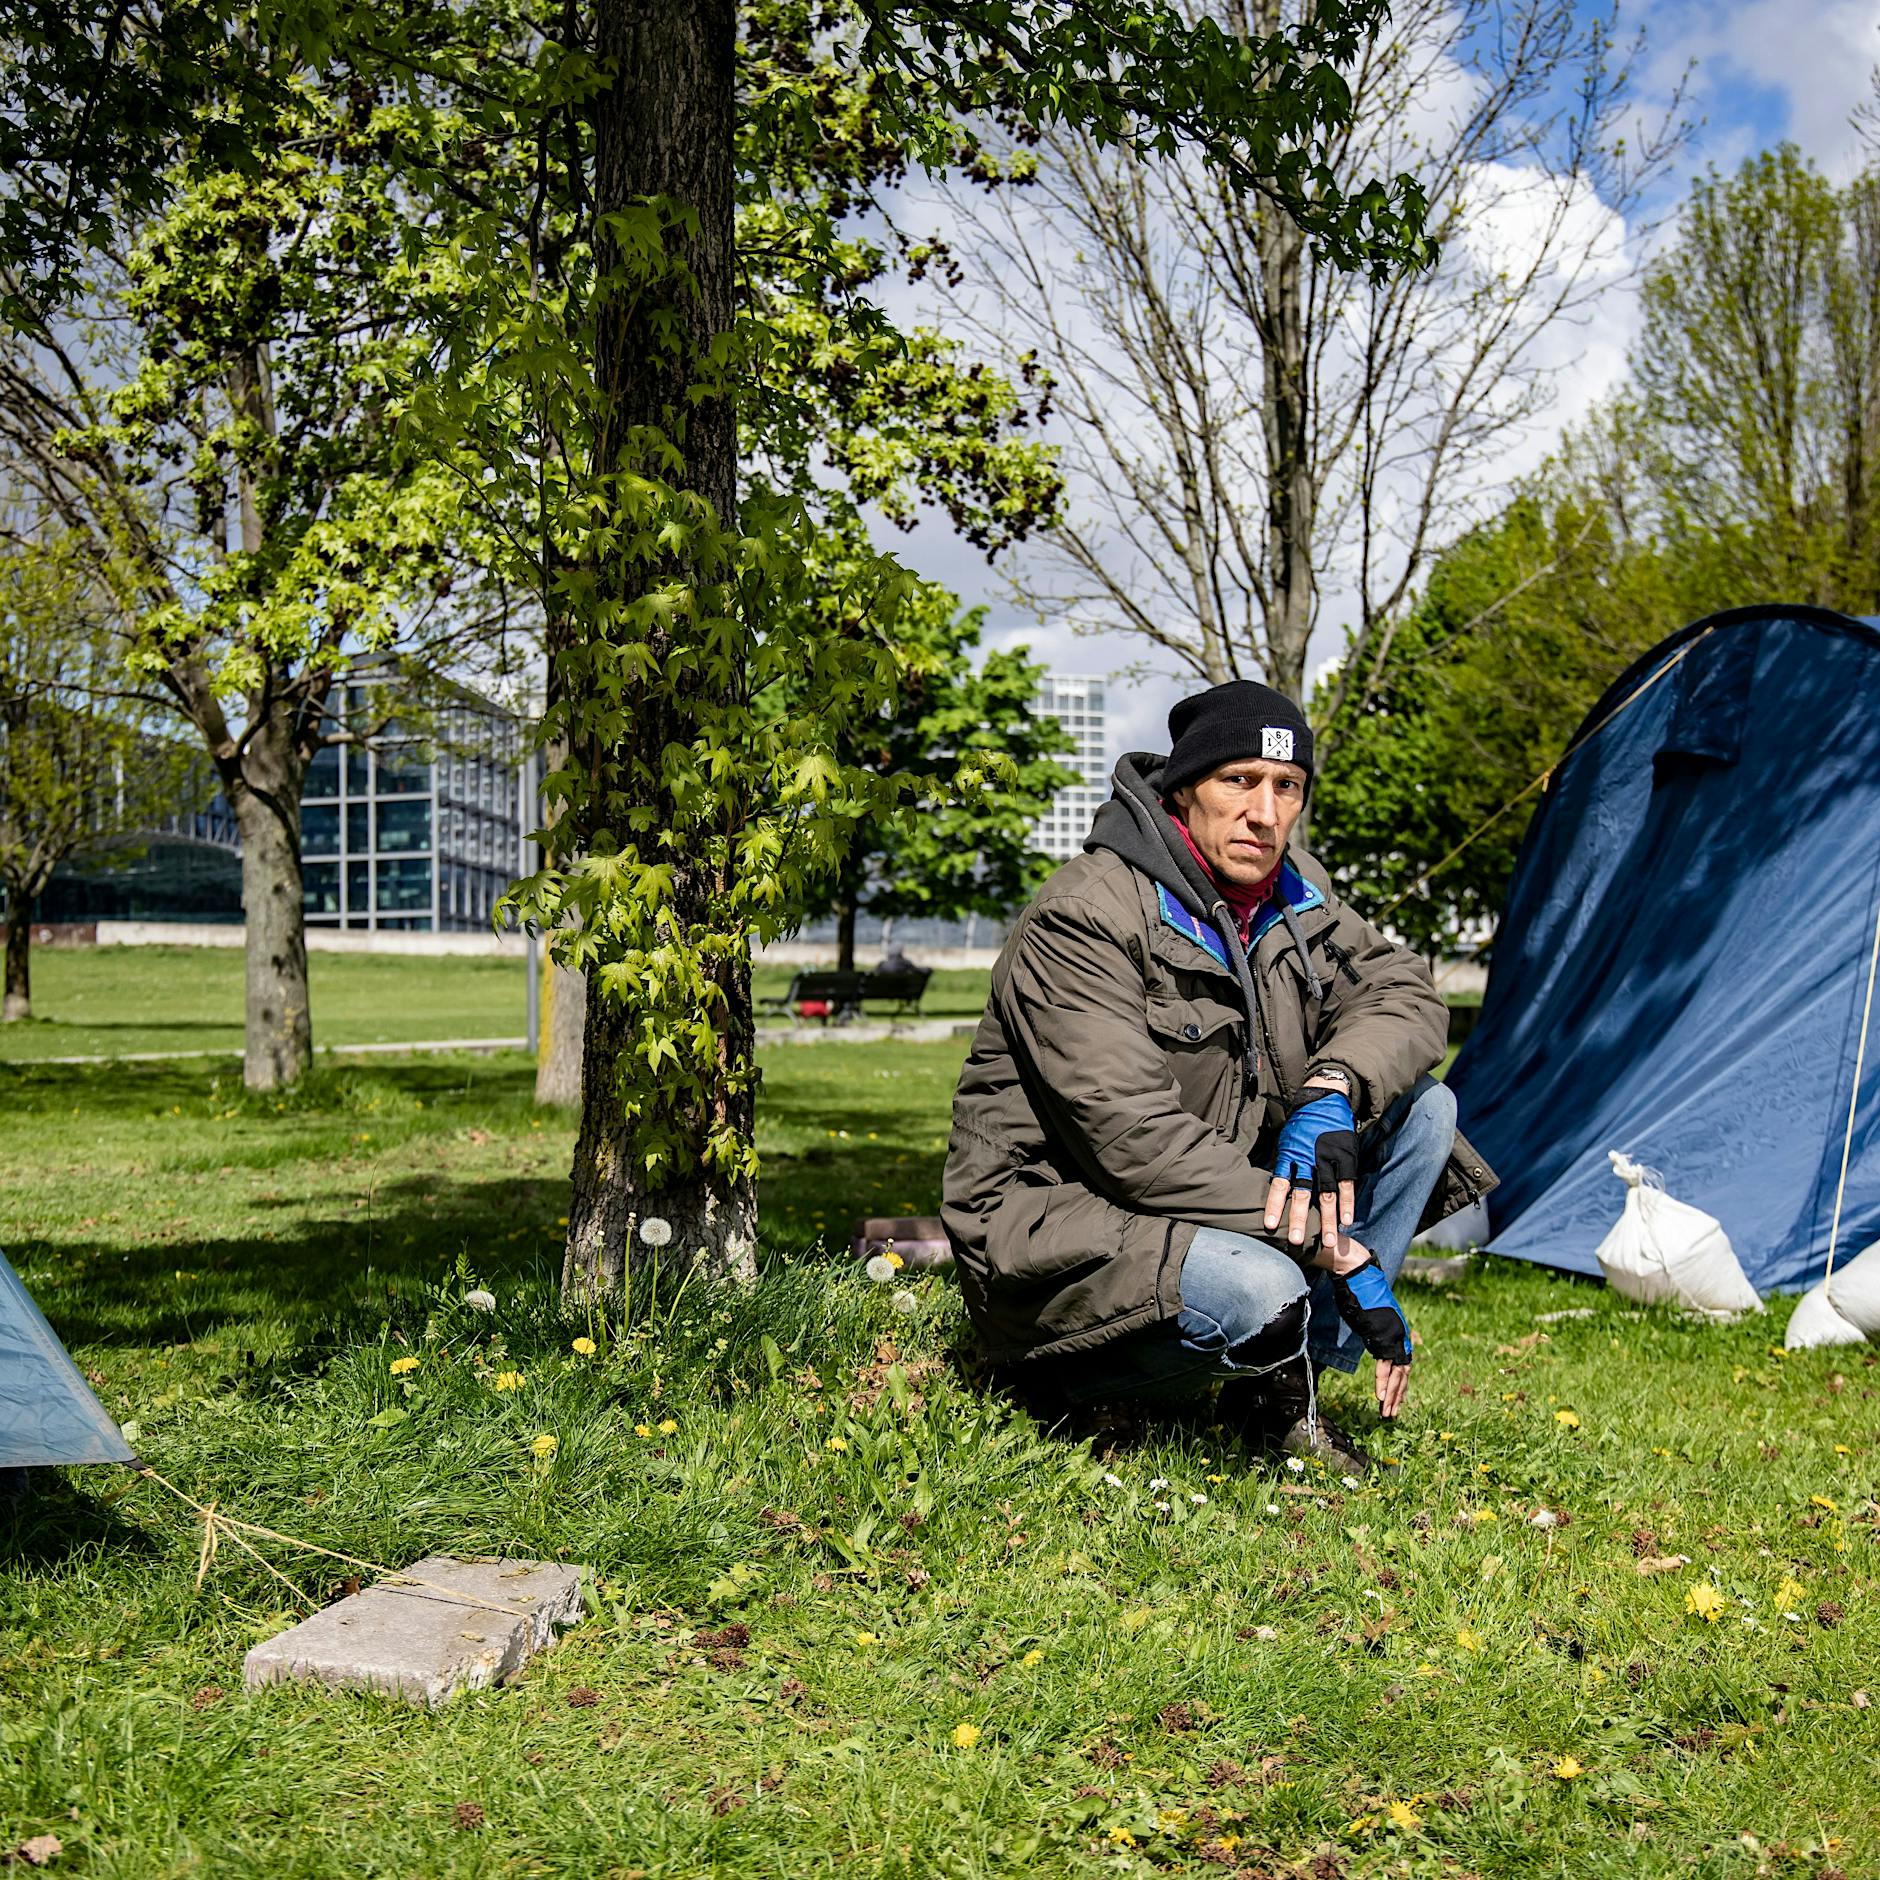 Klima-Hungerstreik in Berlin: Camp vom Kanzleramt in den Invalidenpark umgezogen